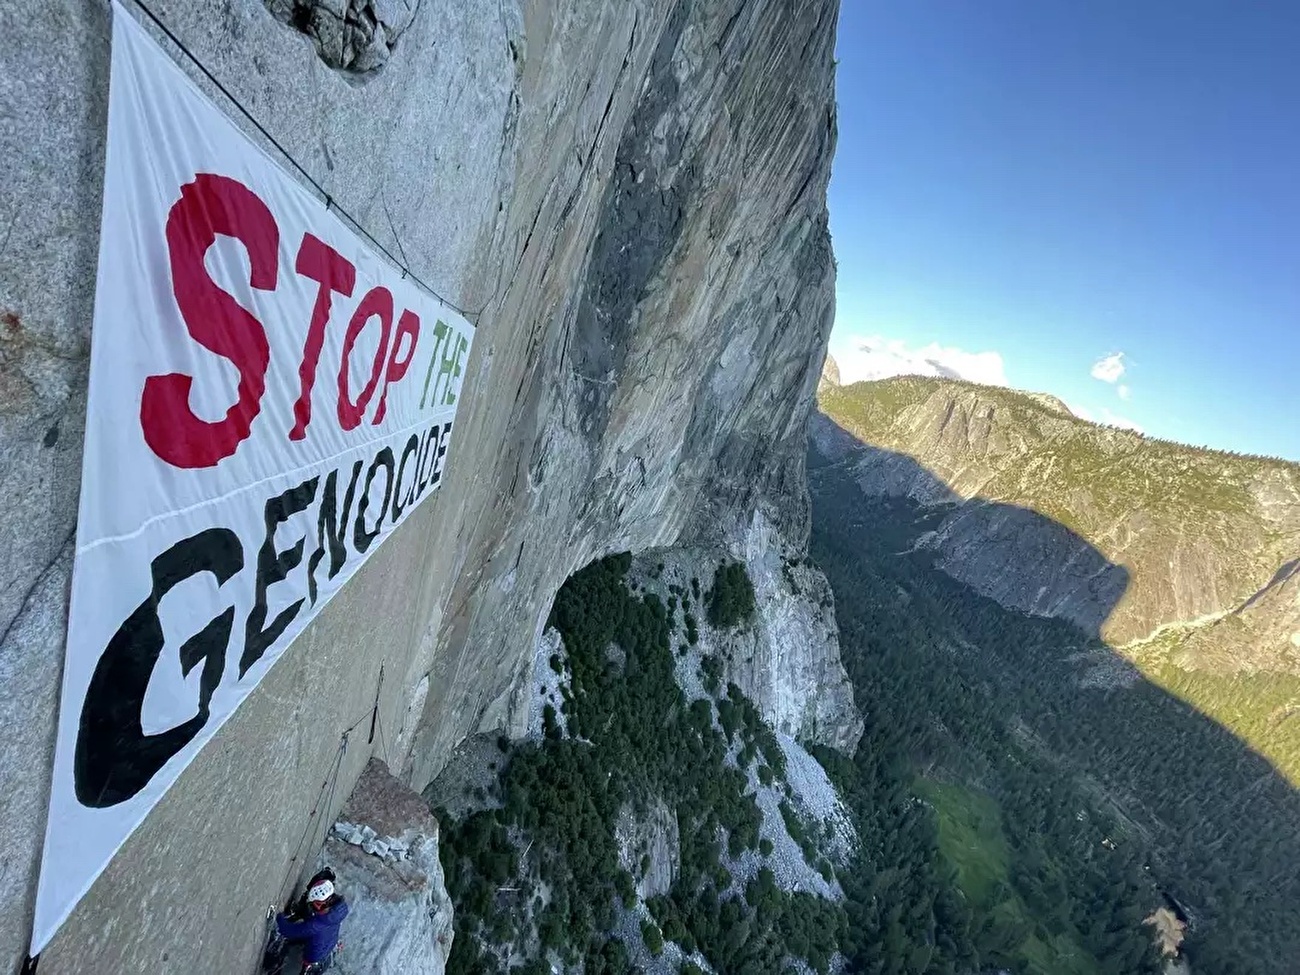 Stop the Genocide, El Capitan, Yosemite